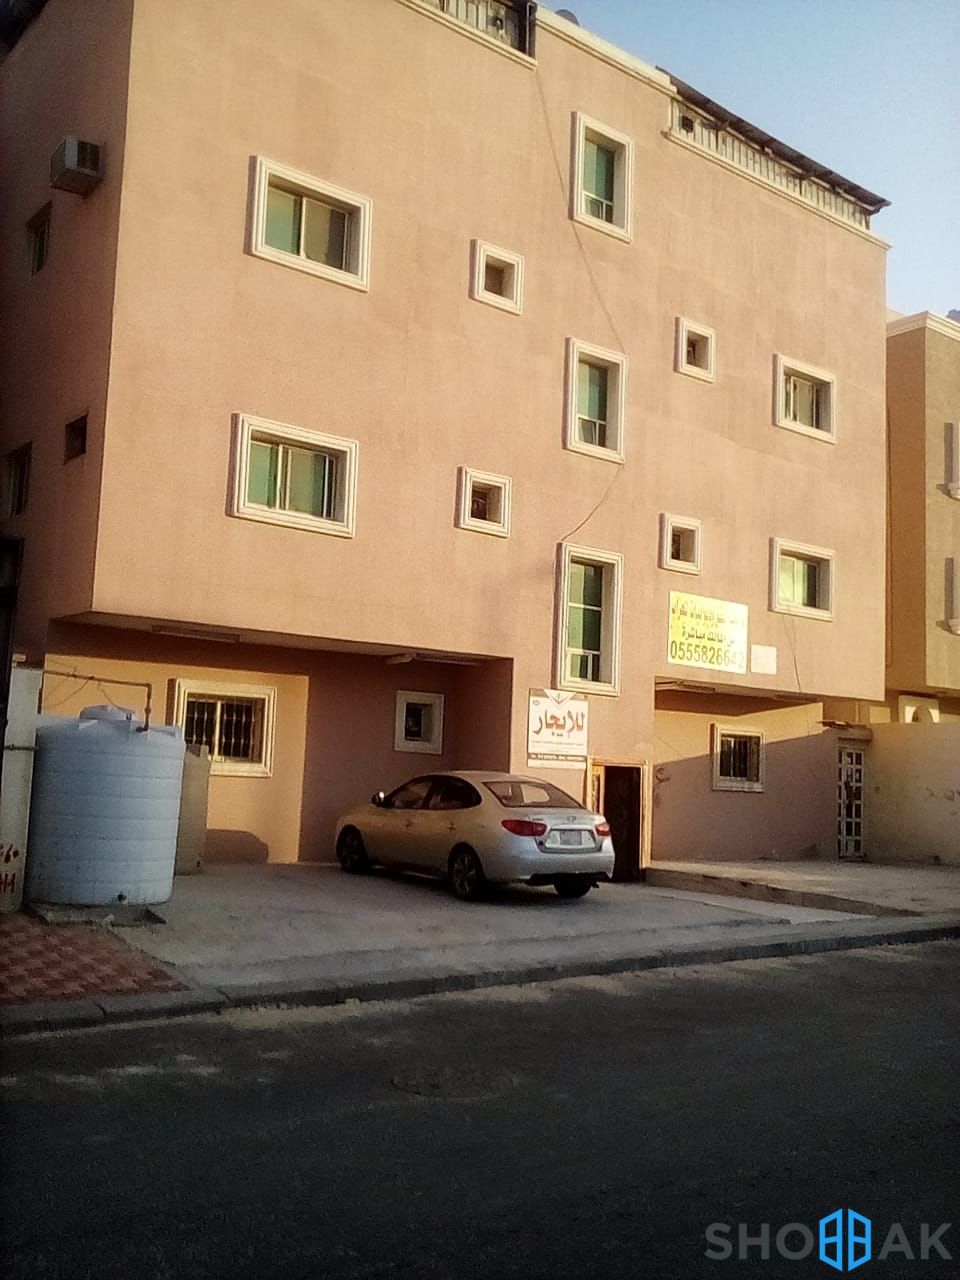 عمارة في حي ضباب للبيع Shobbak Saudi Arabia